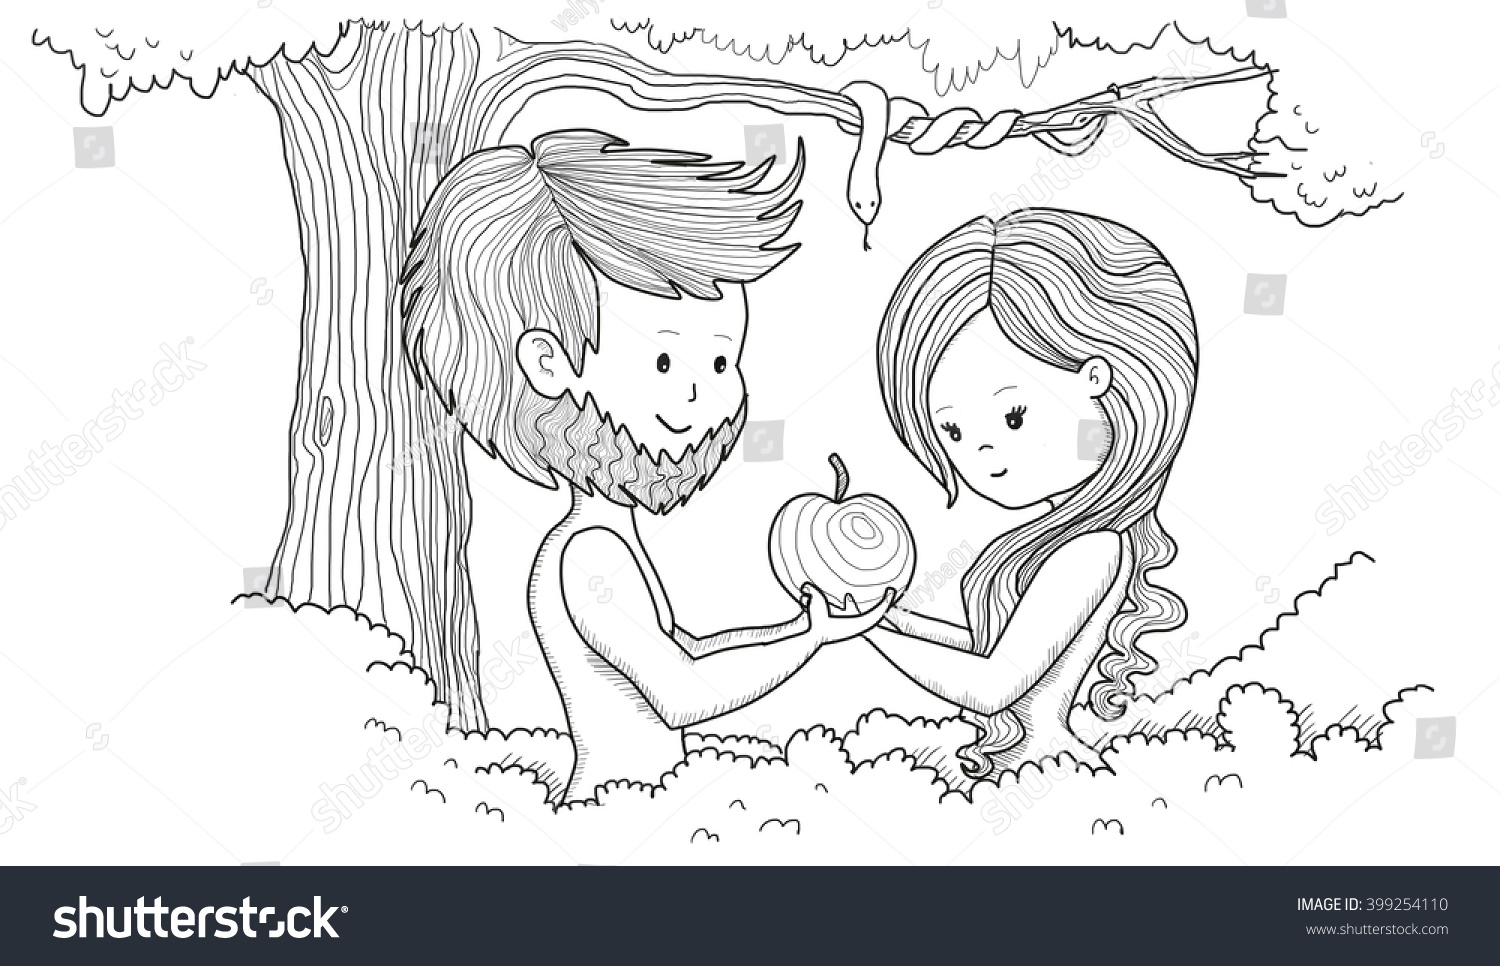 Адам и ева Запретный плод раскраски